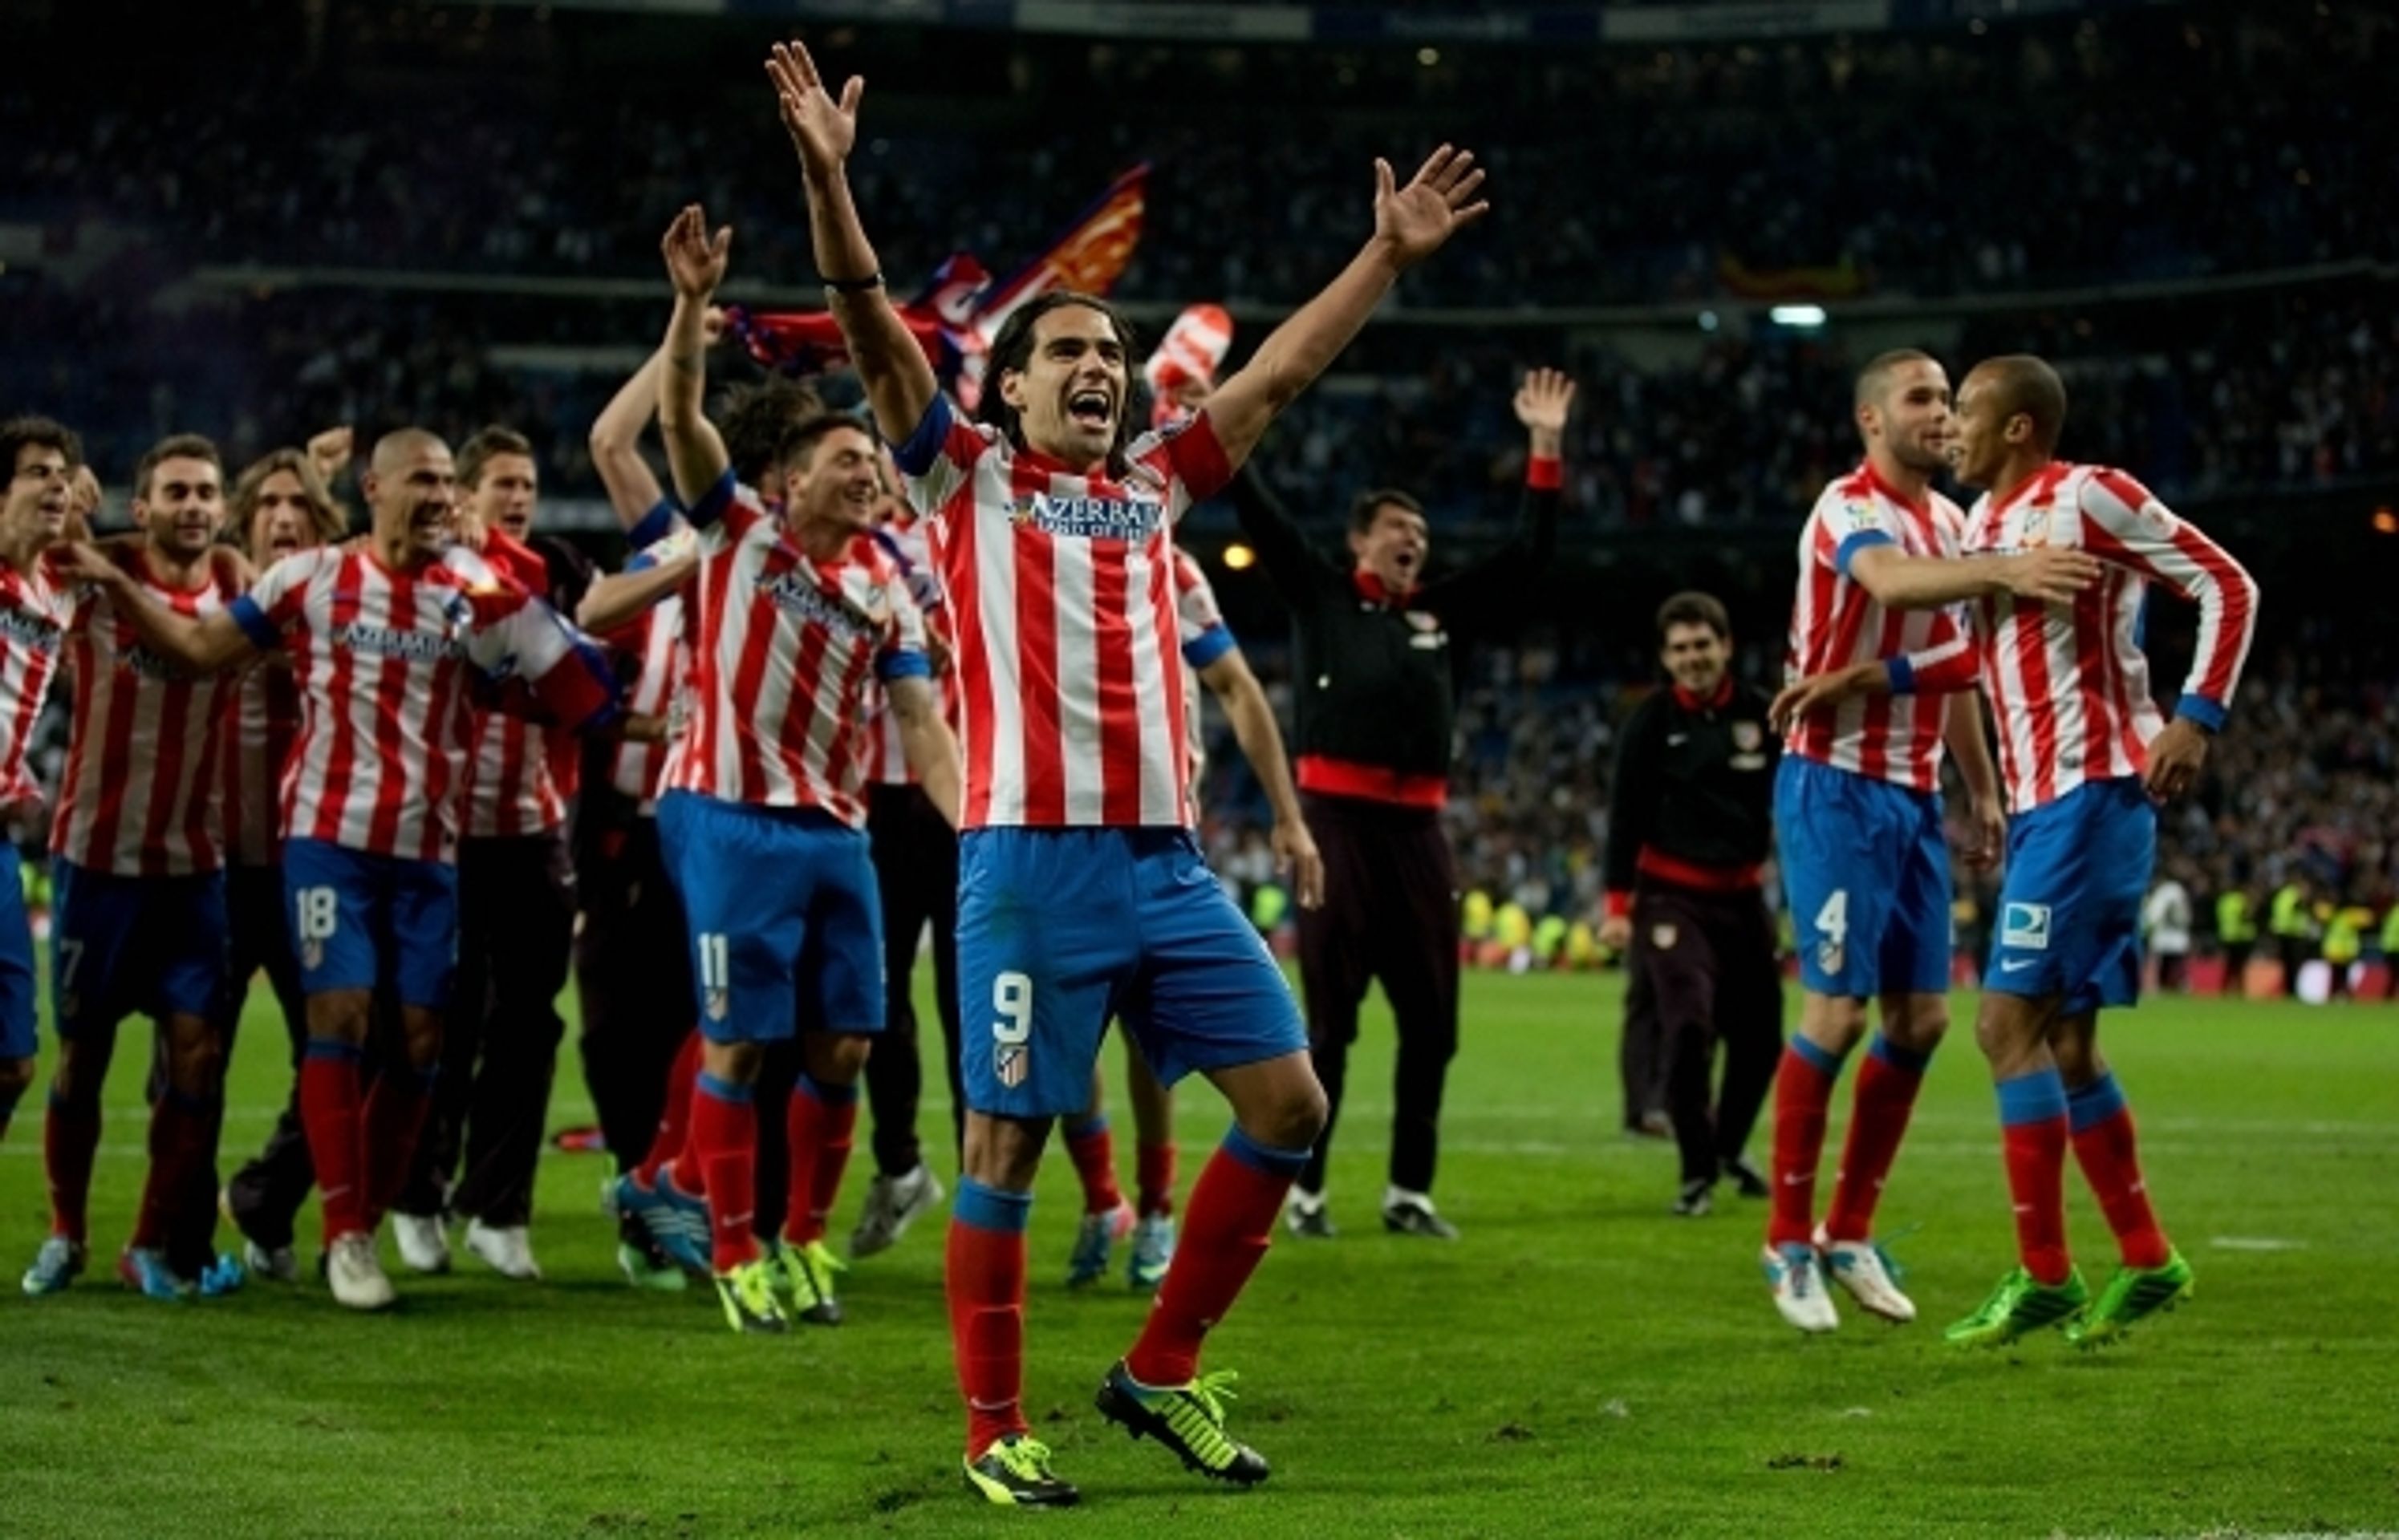 Real - Atlético - 10 - OBRAZEM: Atlético vyhrálo Španělský pohár (10/11)